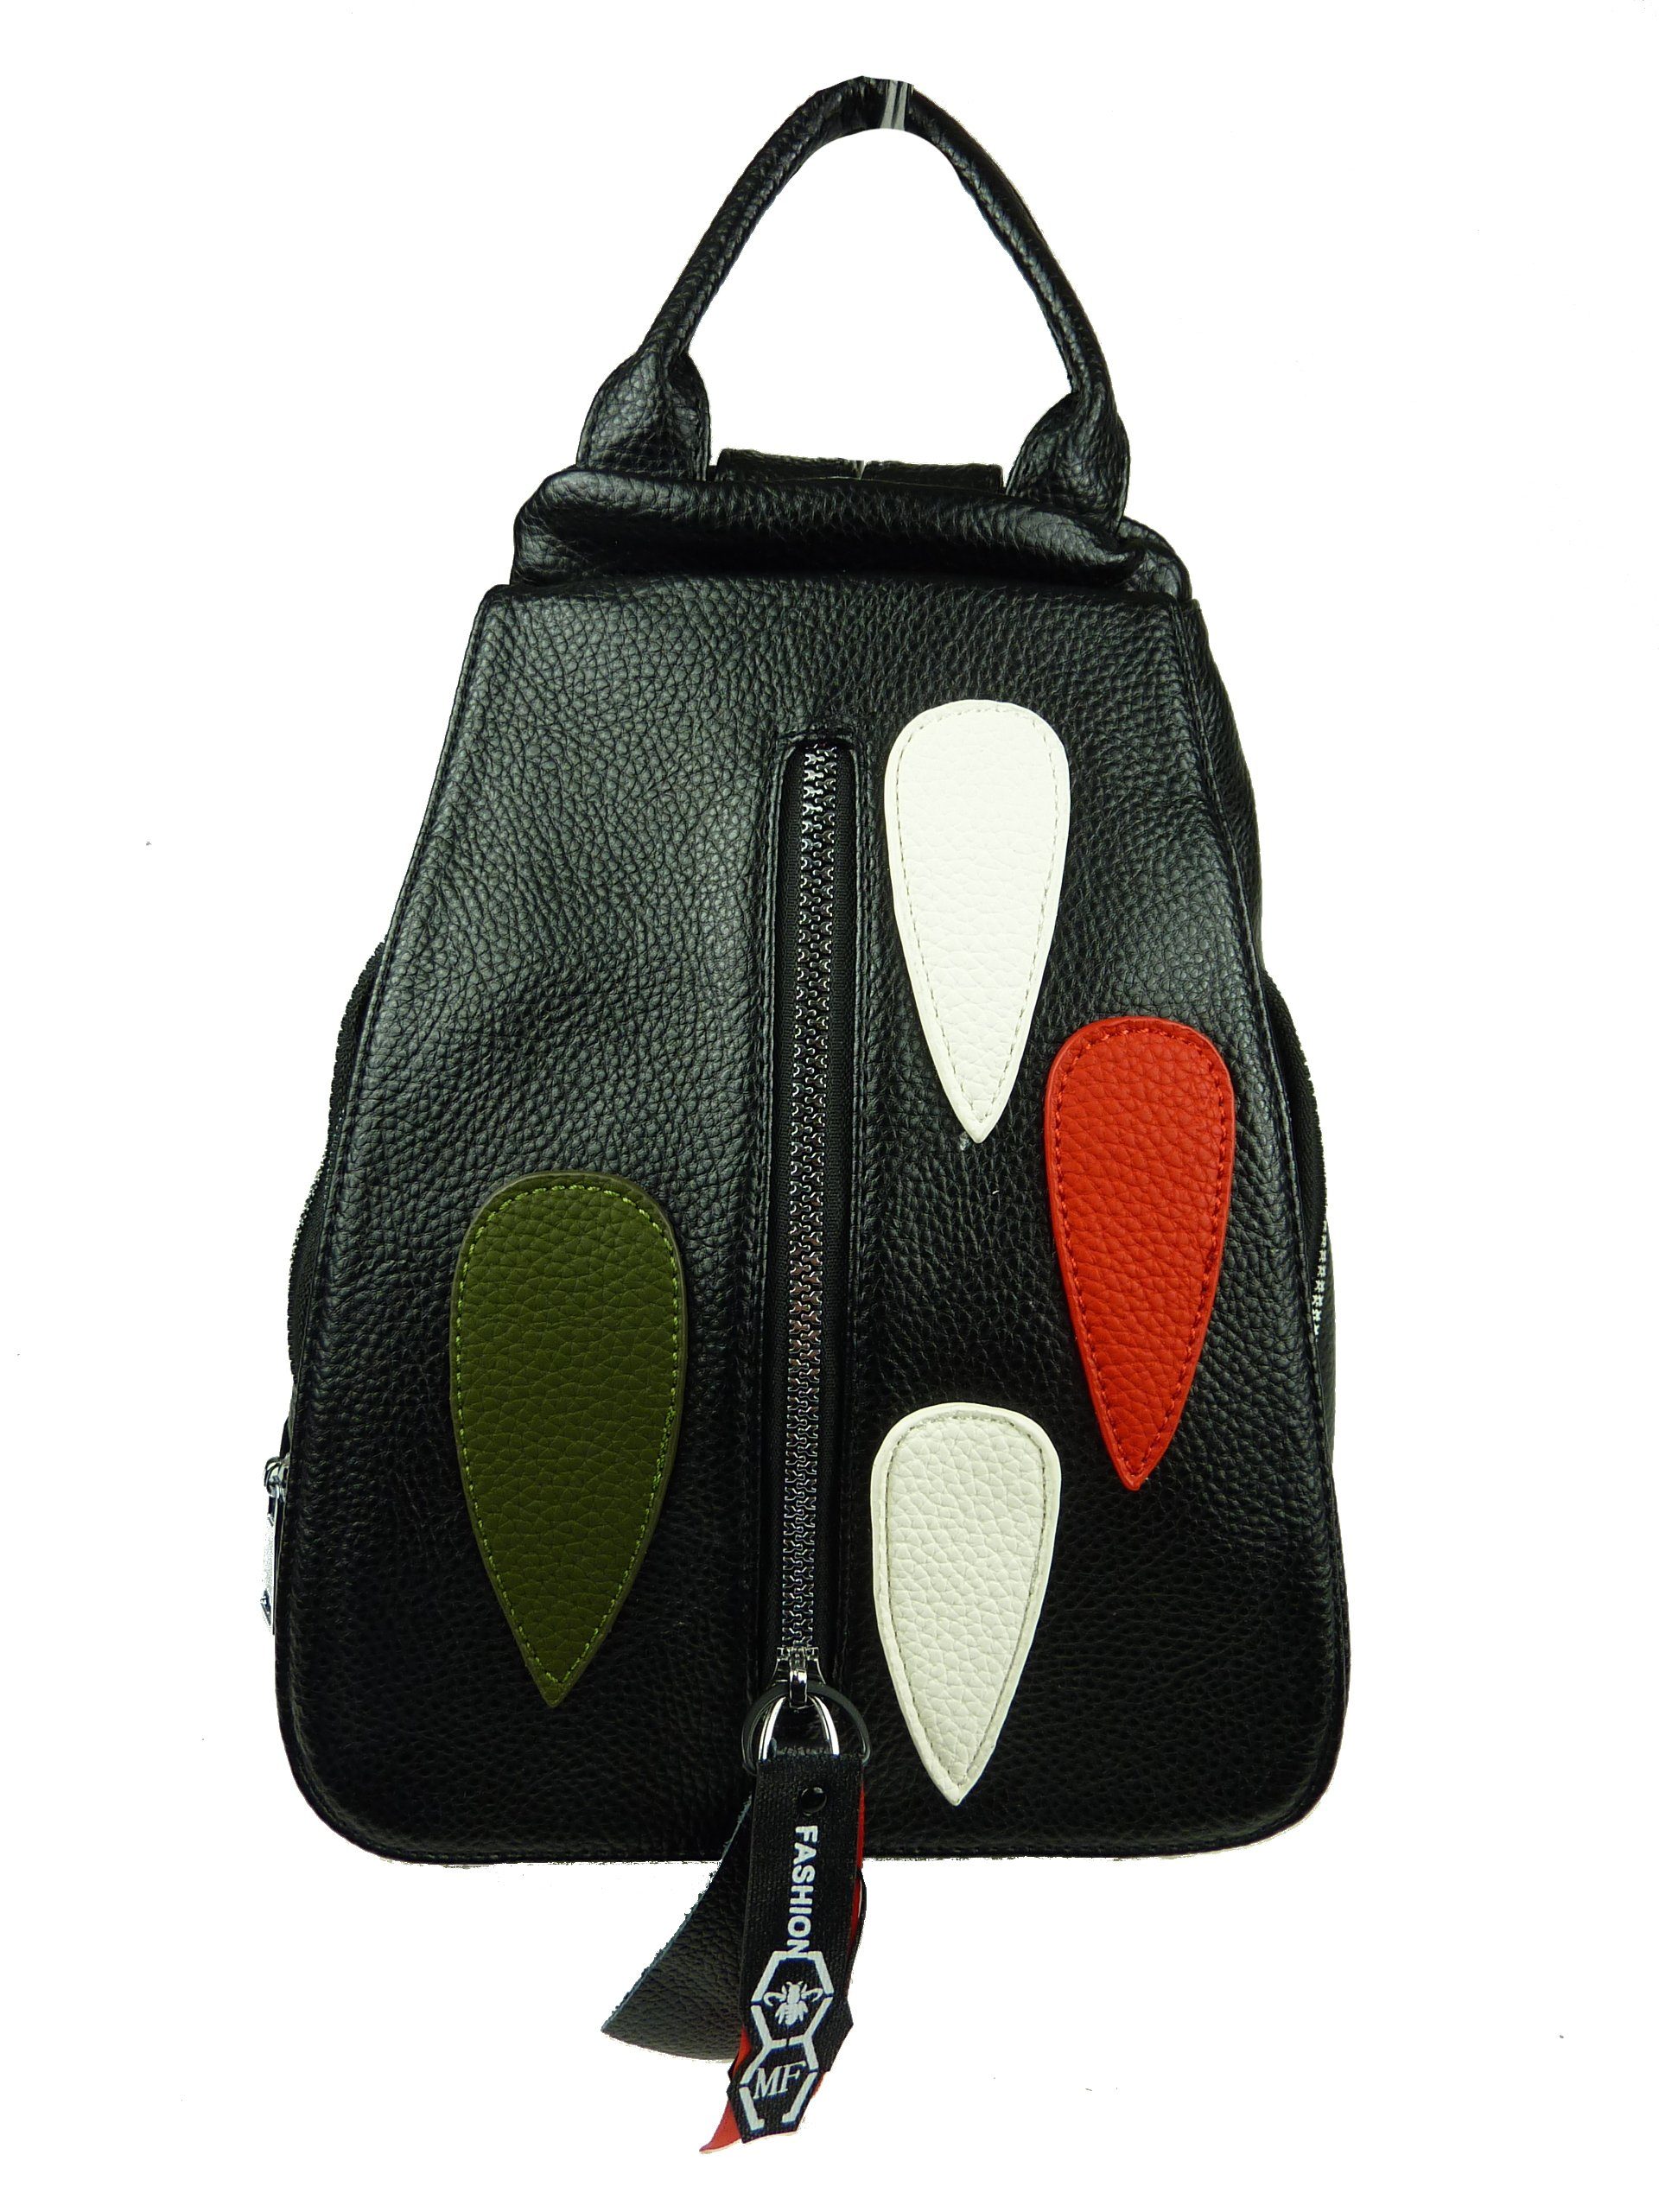 Design viele Rucksack Fächer Rucksacktasche, 069, Damen modernes schwarz drops 83-6-24 Taschen4life Schultertasche - klassiche